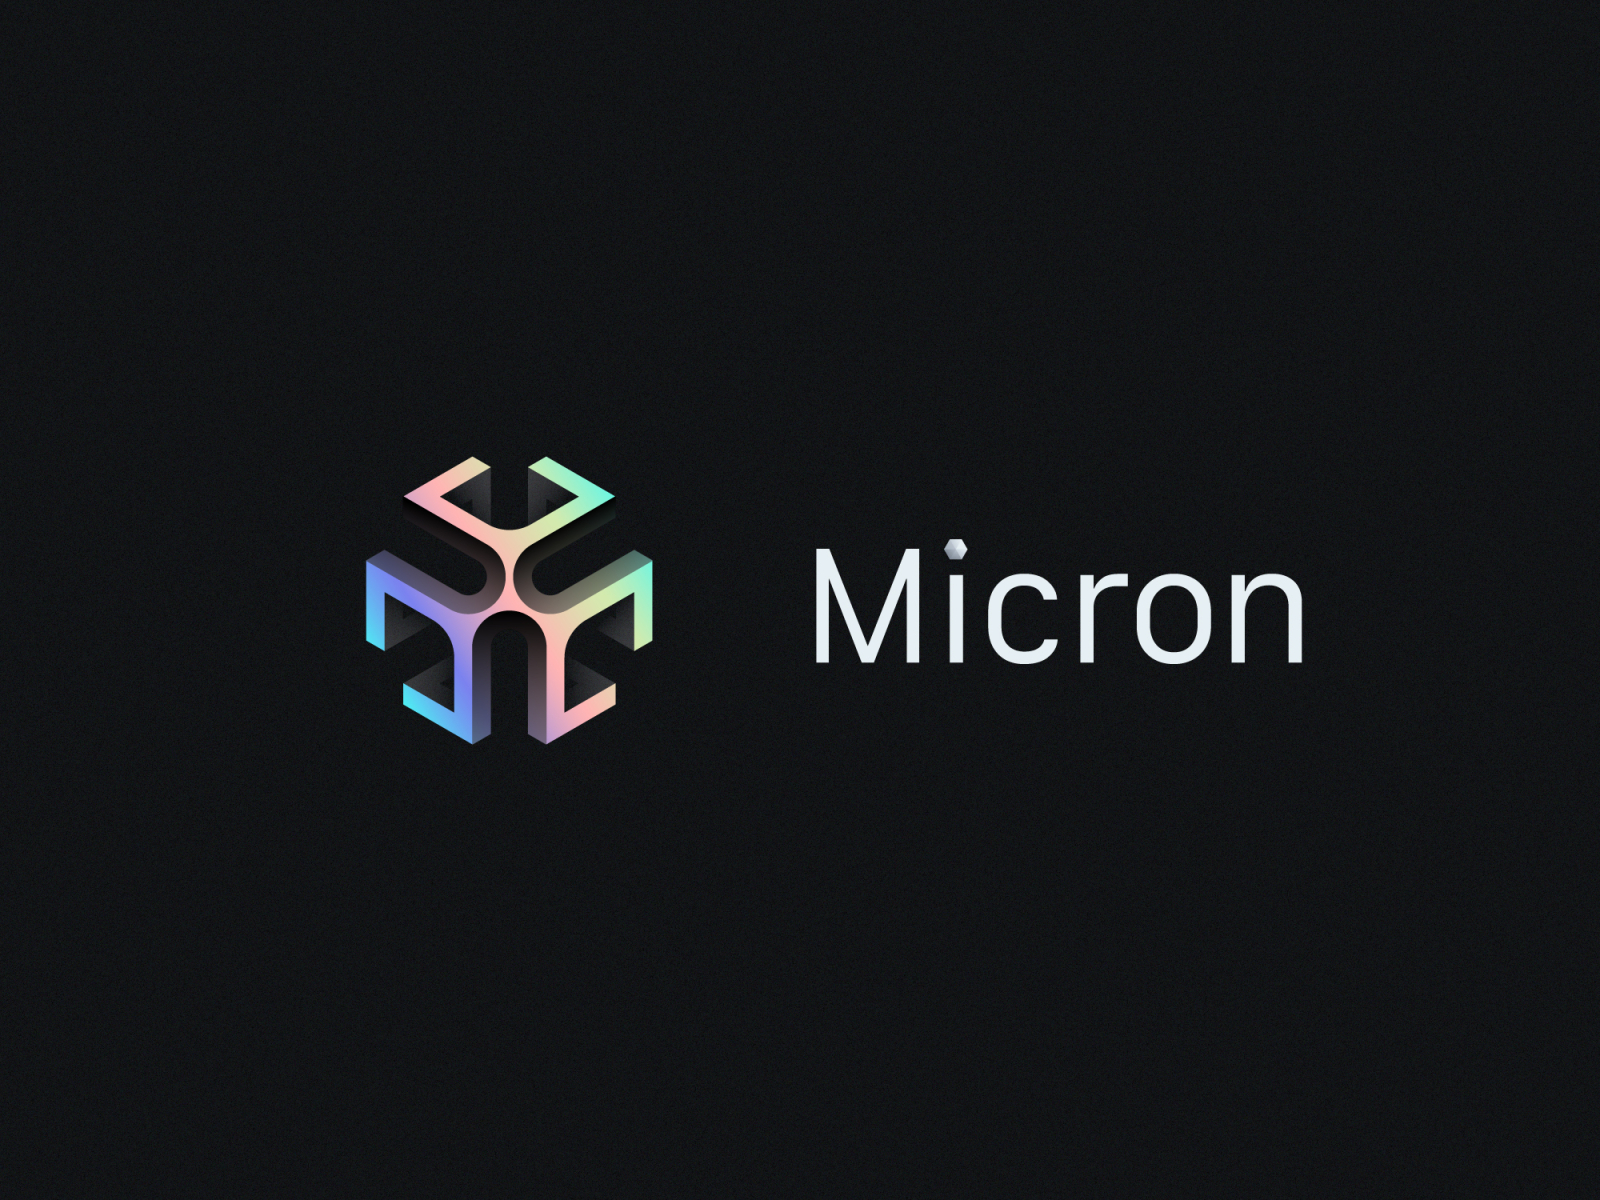 Micron Logo White Myrissakrenzler